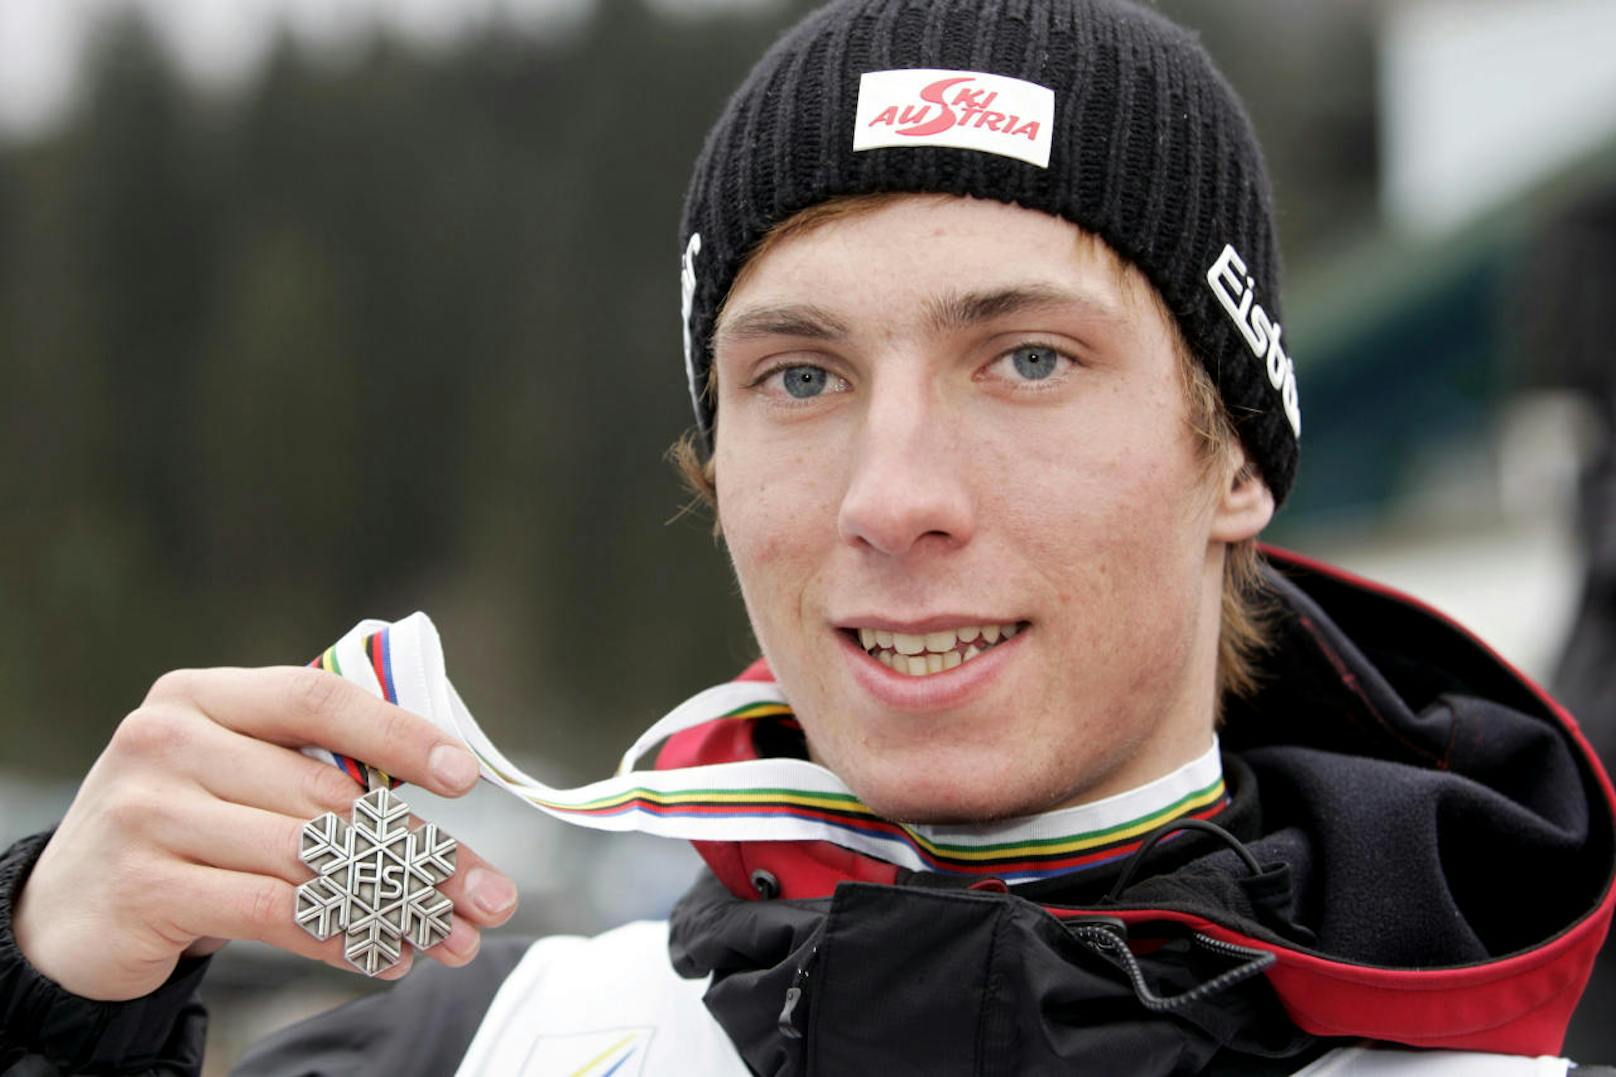 Bei der Ski-Juniorenweltmeisterschaft in Altenmarkt/Zauchensee und Flachau 2007 ging so richtig der Stern des Salzburgers auf. Hirscher holte Gold im Riesentorlauf und Silber im Slalom. 